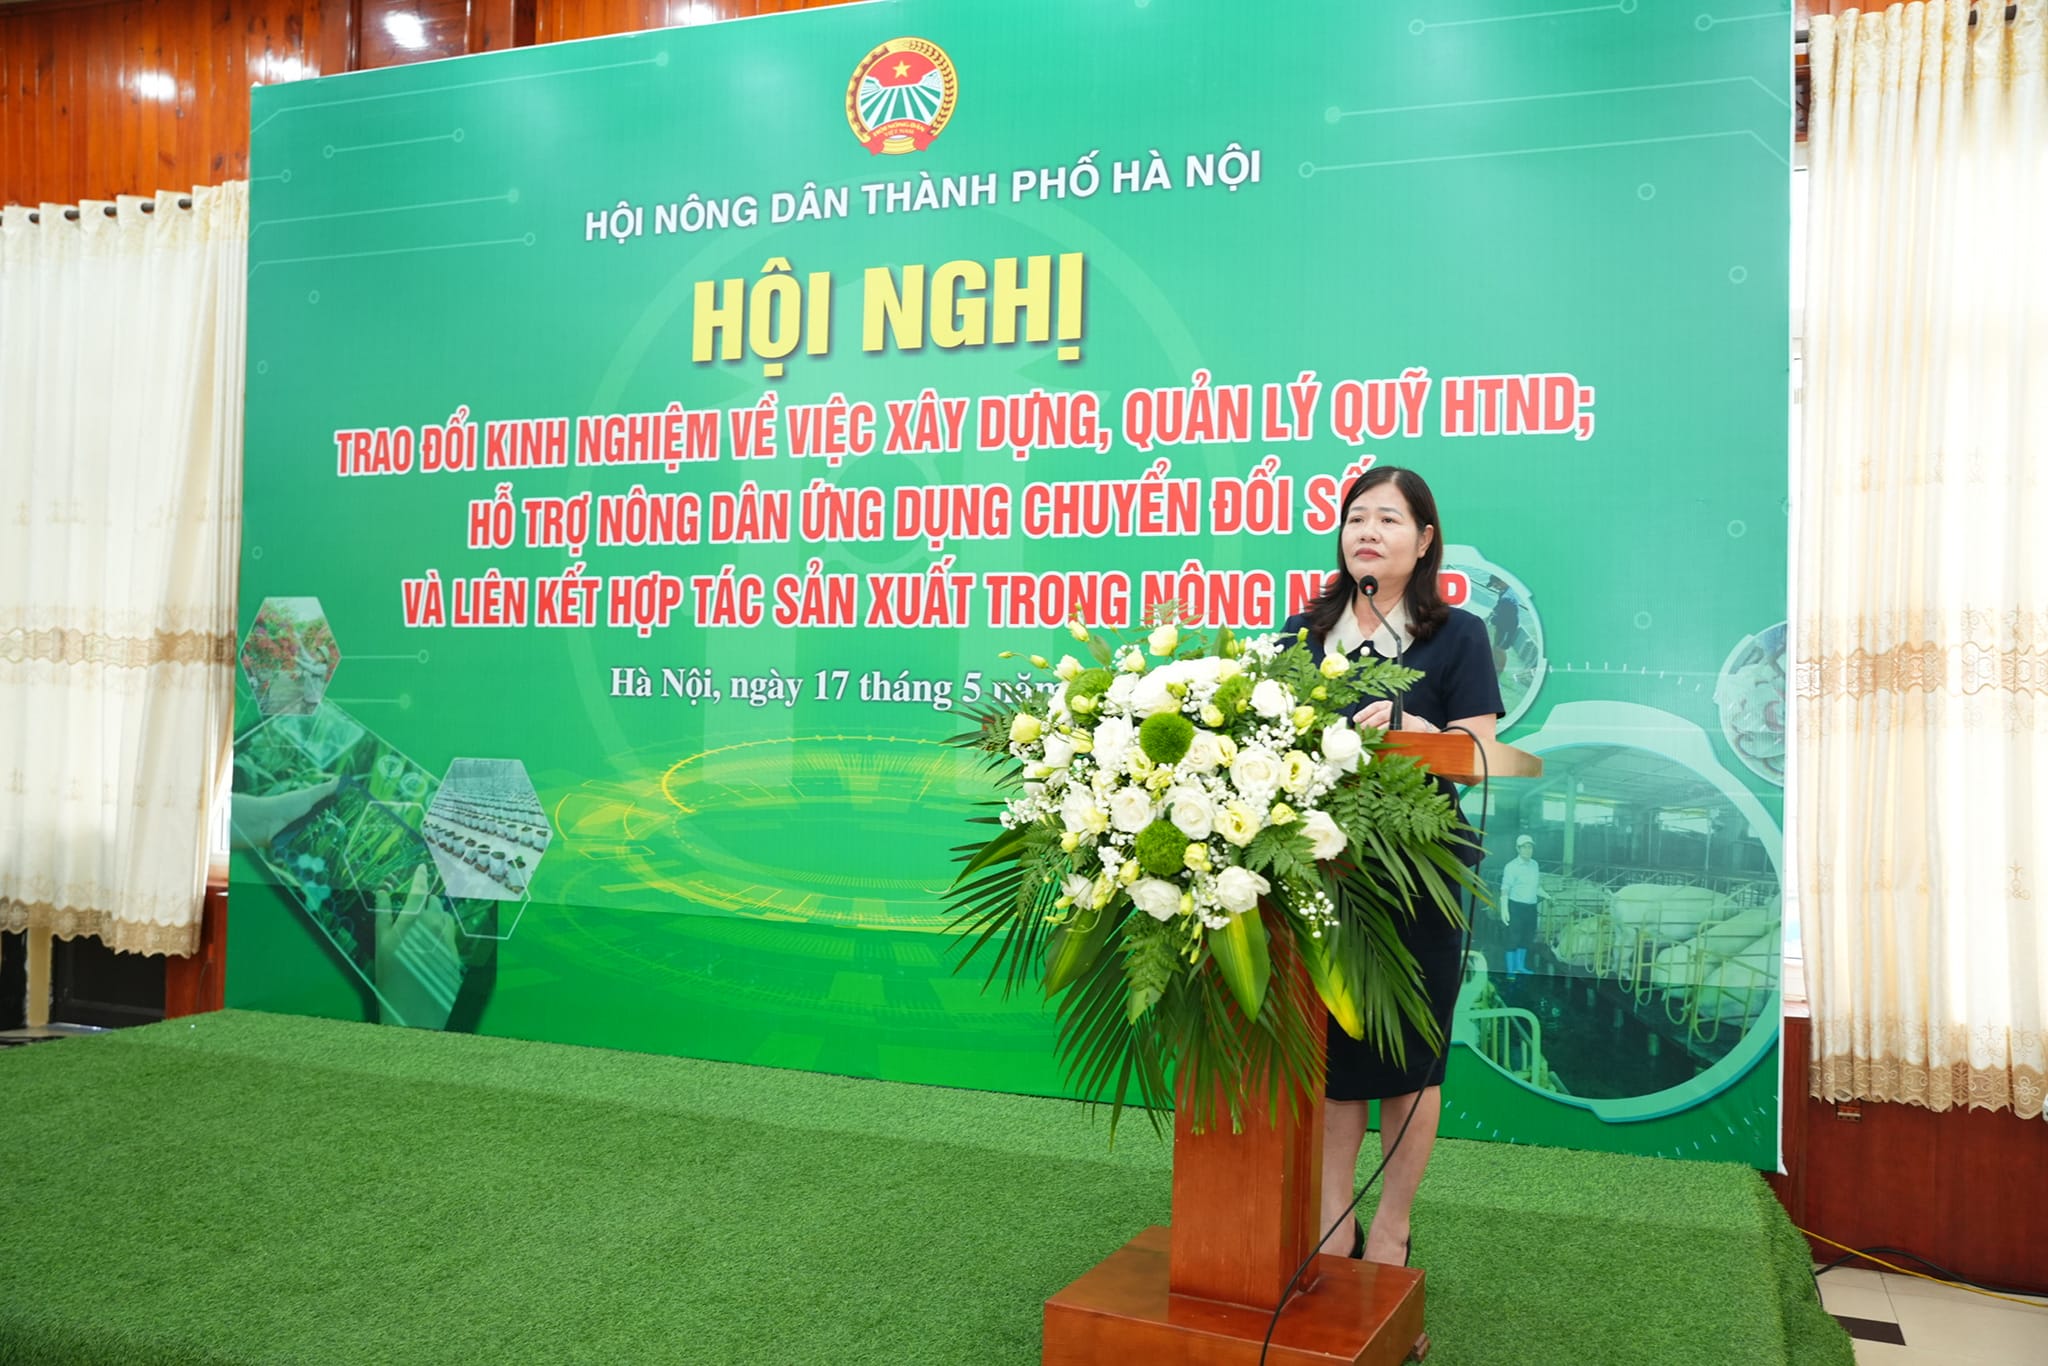 Hội Nông dân TP Hà Nội trao đổi kinh nghiệm xây dựng, quản lý Quỹ HTND, hỗ trợ nông dân chuyển đổi số, liên kết- Ảnh 3.